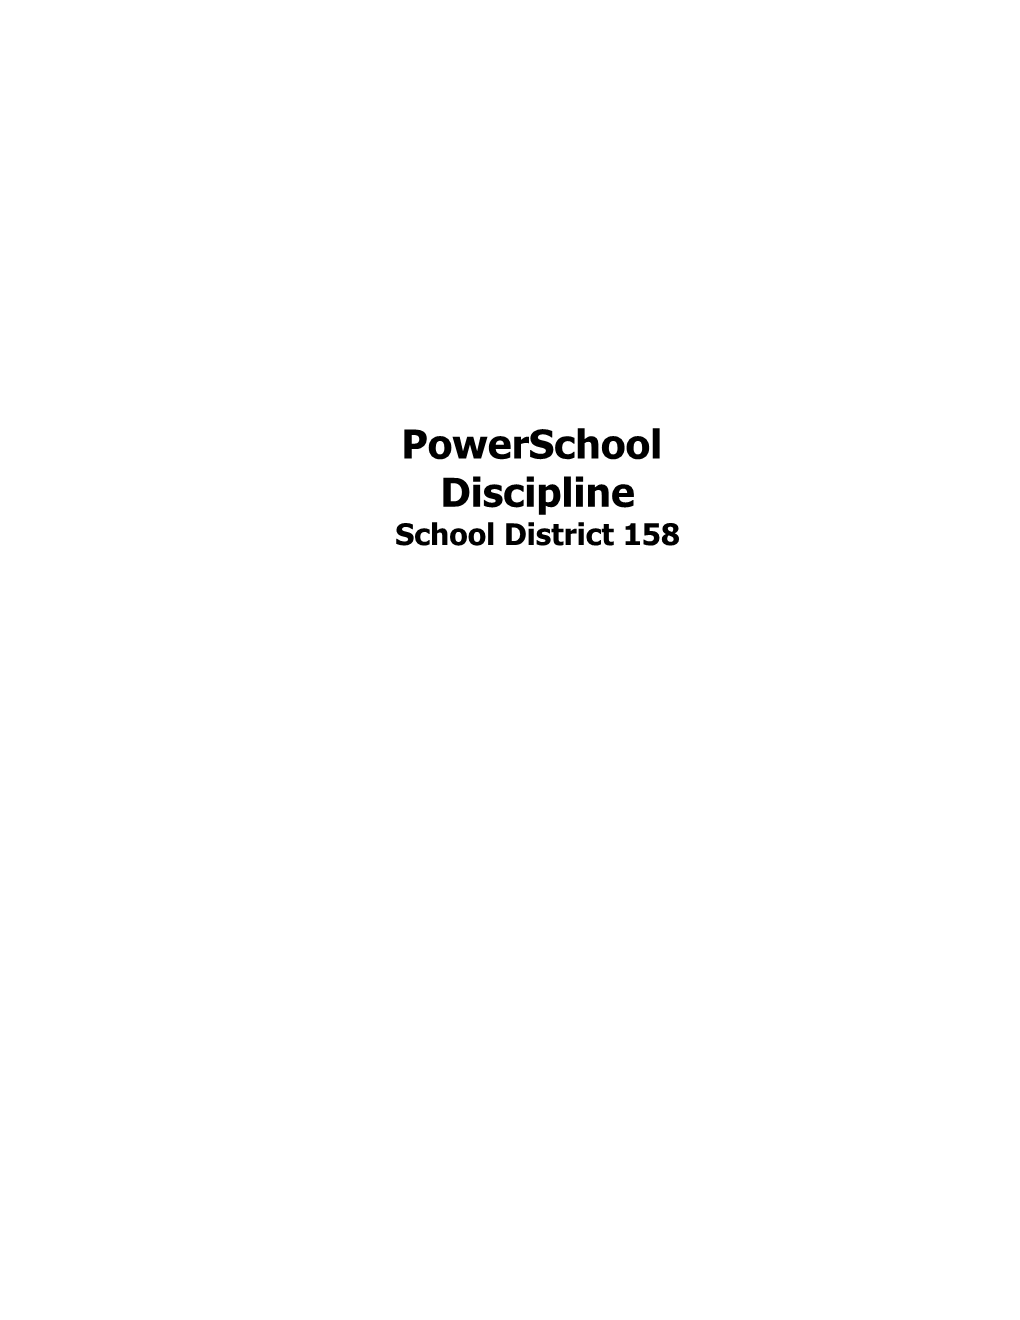 School District 158 Technologypowerschool Discipline